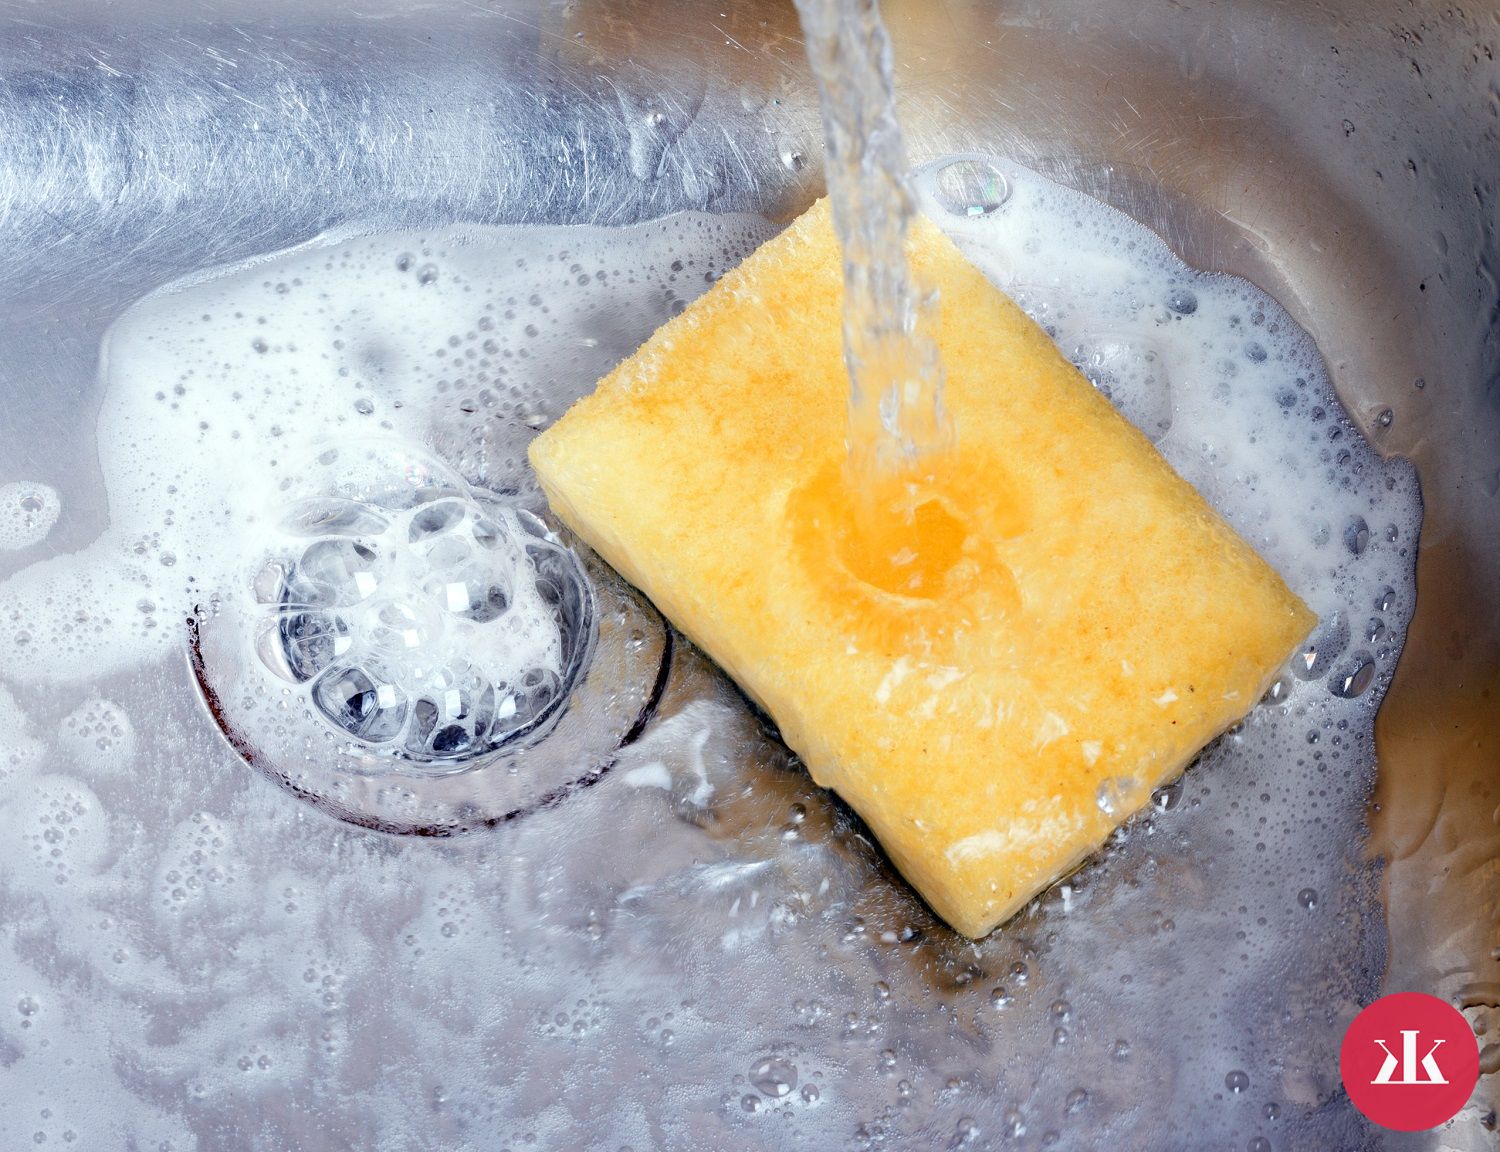 Špongia na umývanie riadu - kedy sa jej už treba zbaviť?